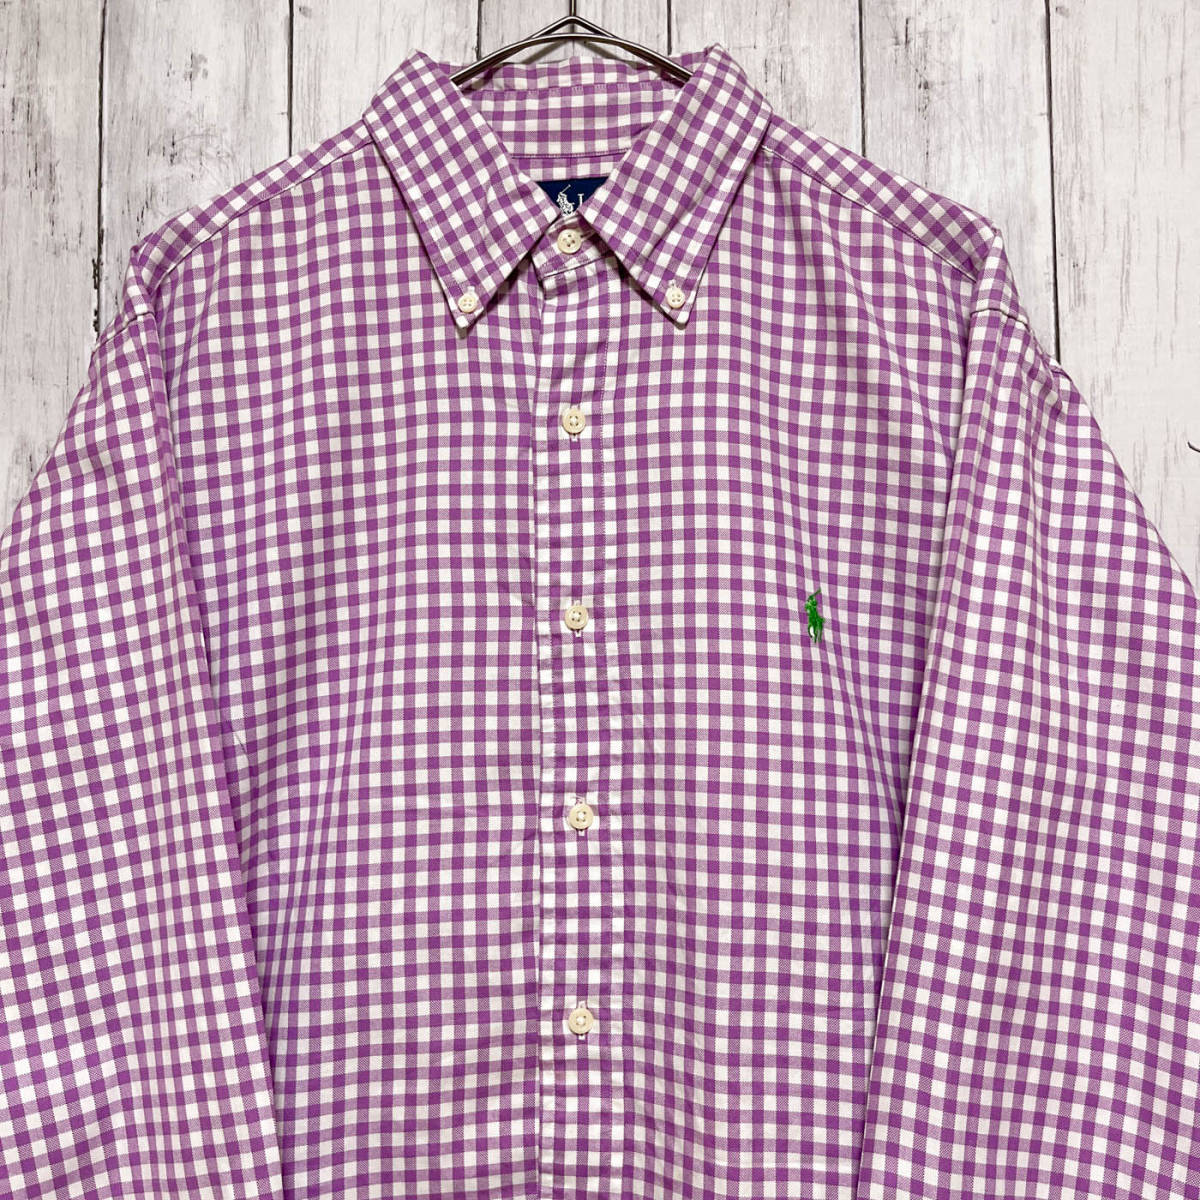 ラルフローレン Ralph Lauren CLASSIC FIT チェックシャツ 長袖シャツ メンズ ワンポイント コットン100% サイズ17 XLサイズ 3‐661_画像1